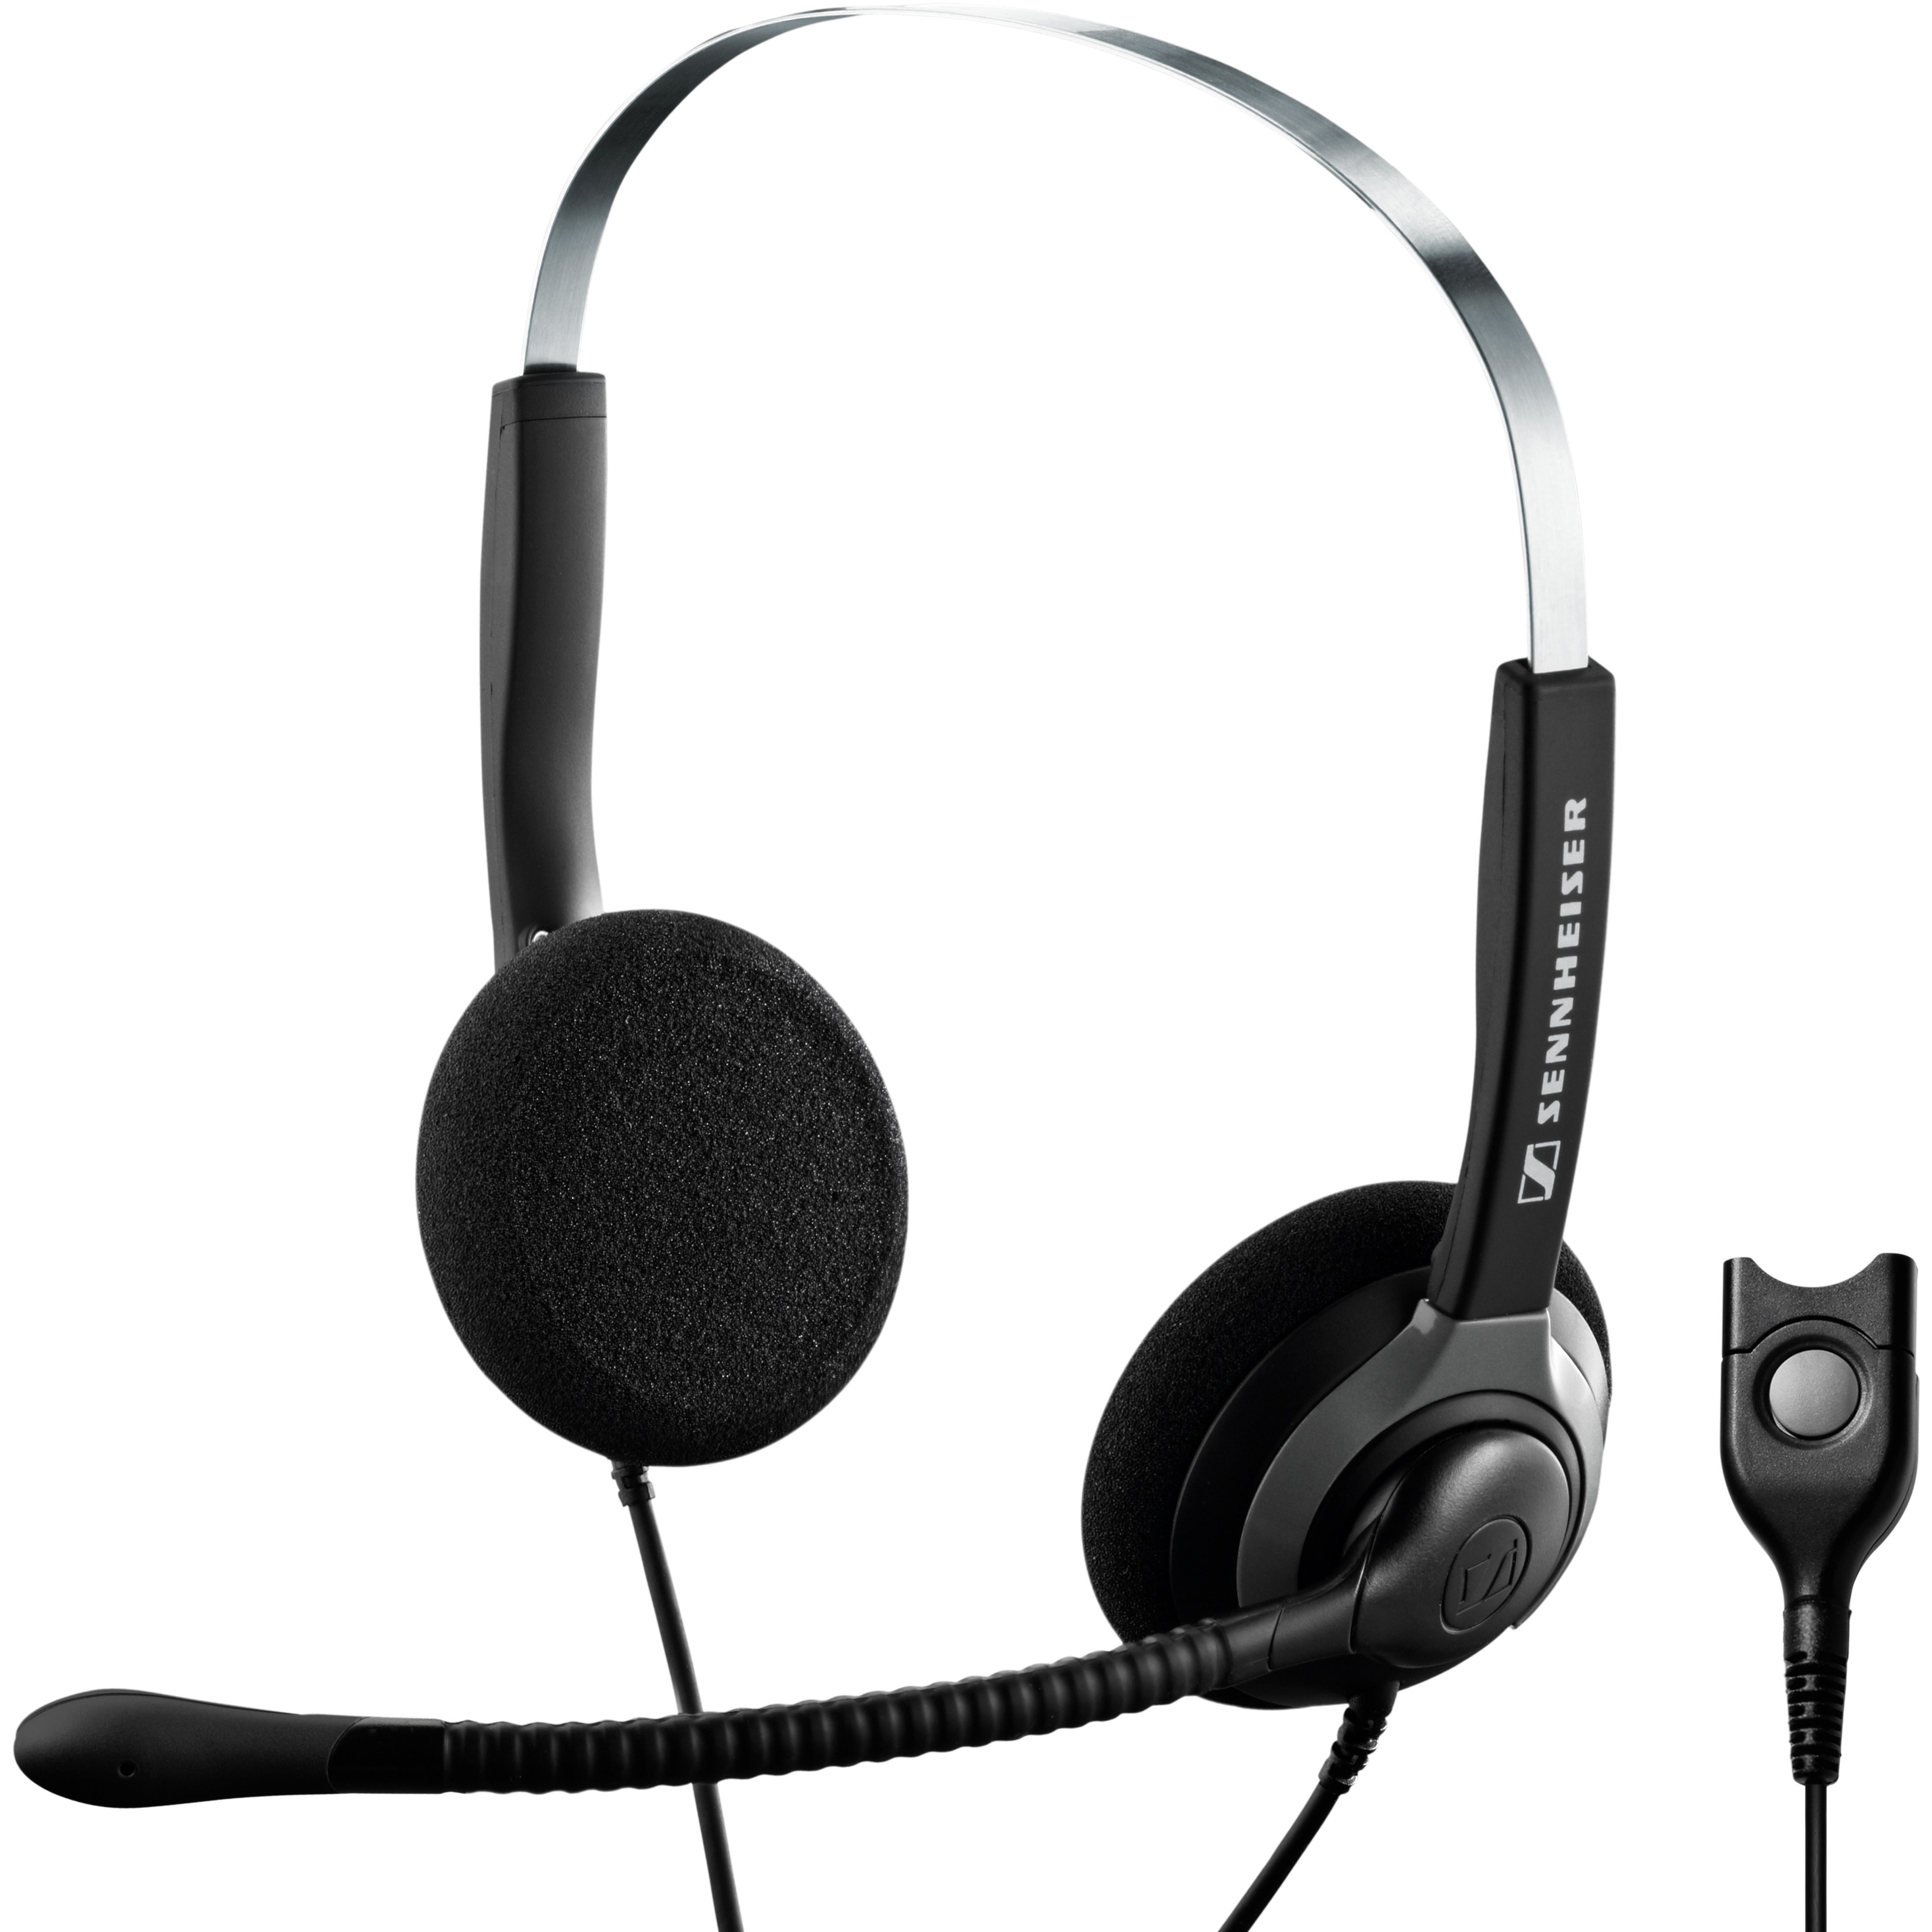 EPOS | SENNHEISER 500223 SH 250 Headset, Binaural On-ear, Boom Microphone, Easy Disconnect Interface